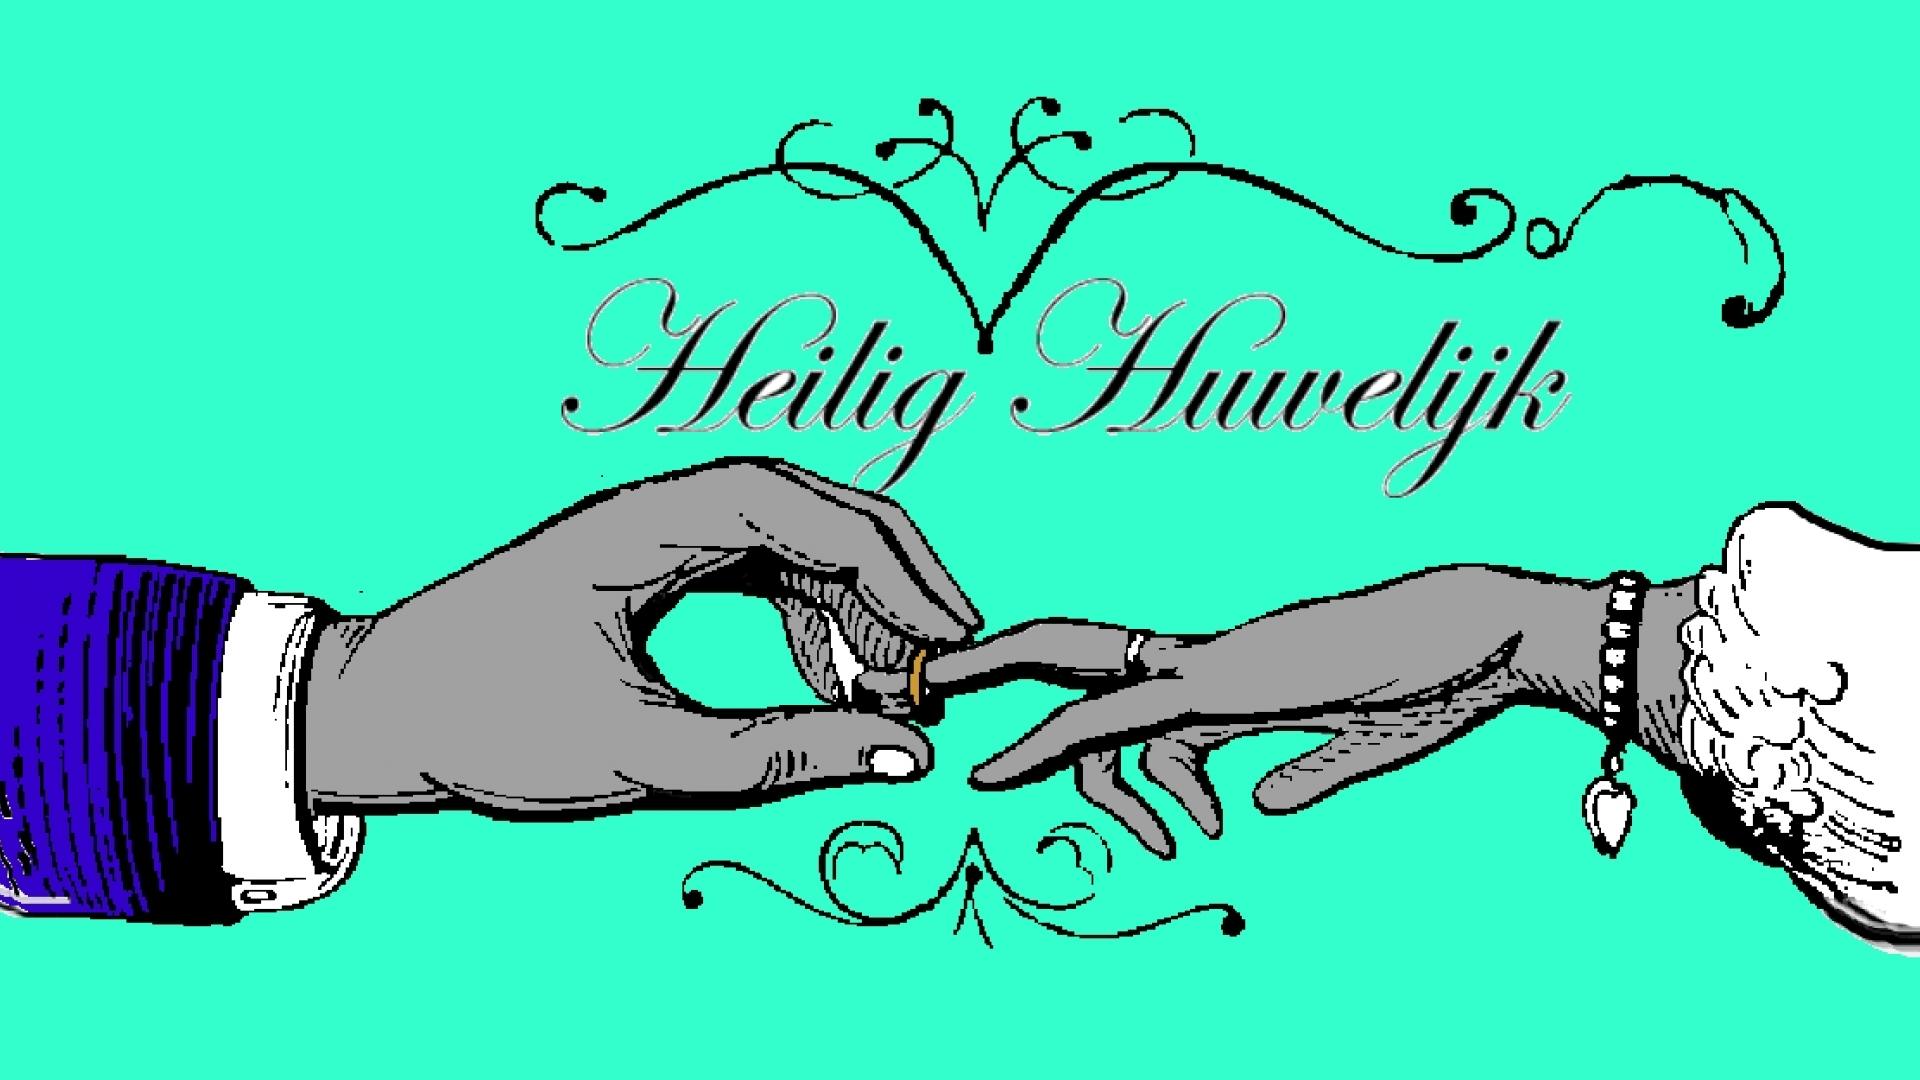 Gravure waarbij mannenhand ring schuift aan vrouwenhand en tekst "Heilig Huwelijk"